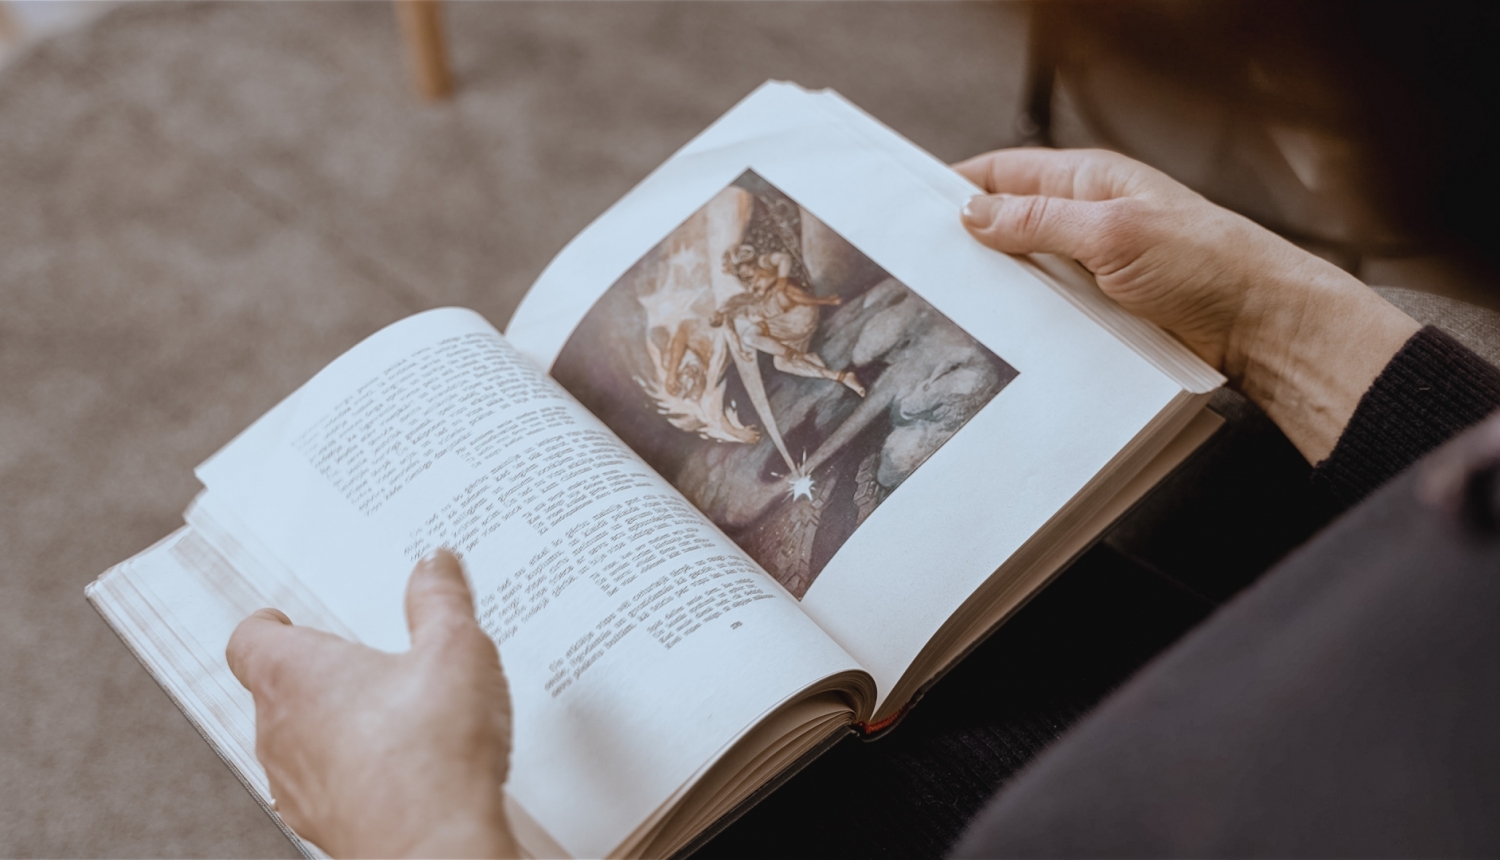 Persona sēžot lasa grāmatu, pār plecu var redzēt tekstu un pasakas ilustrāciju